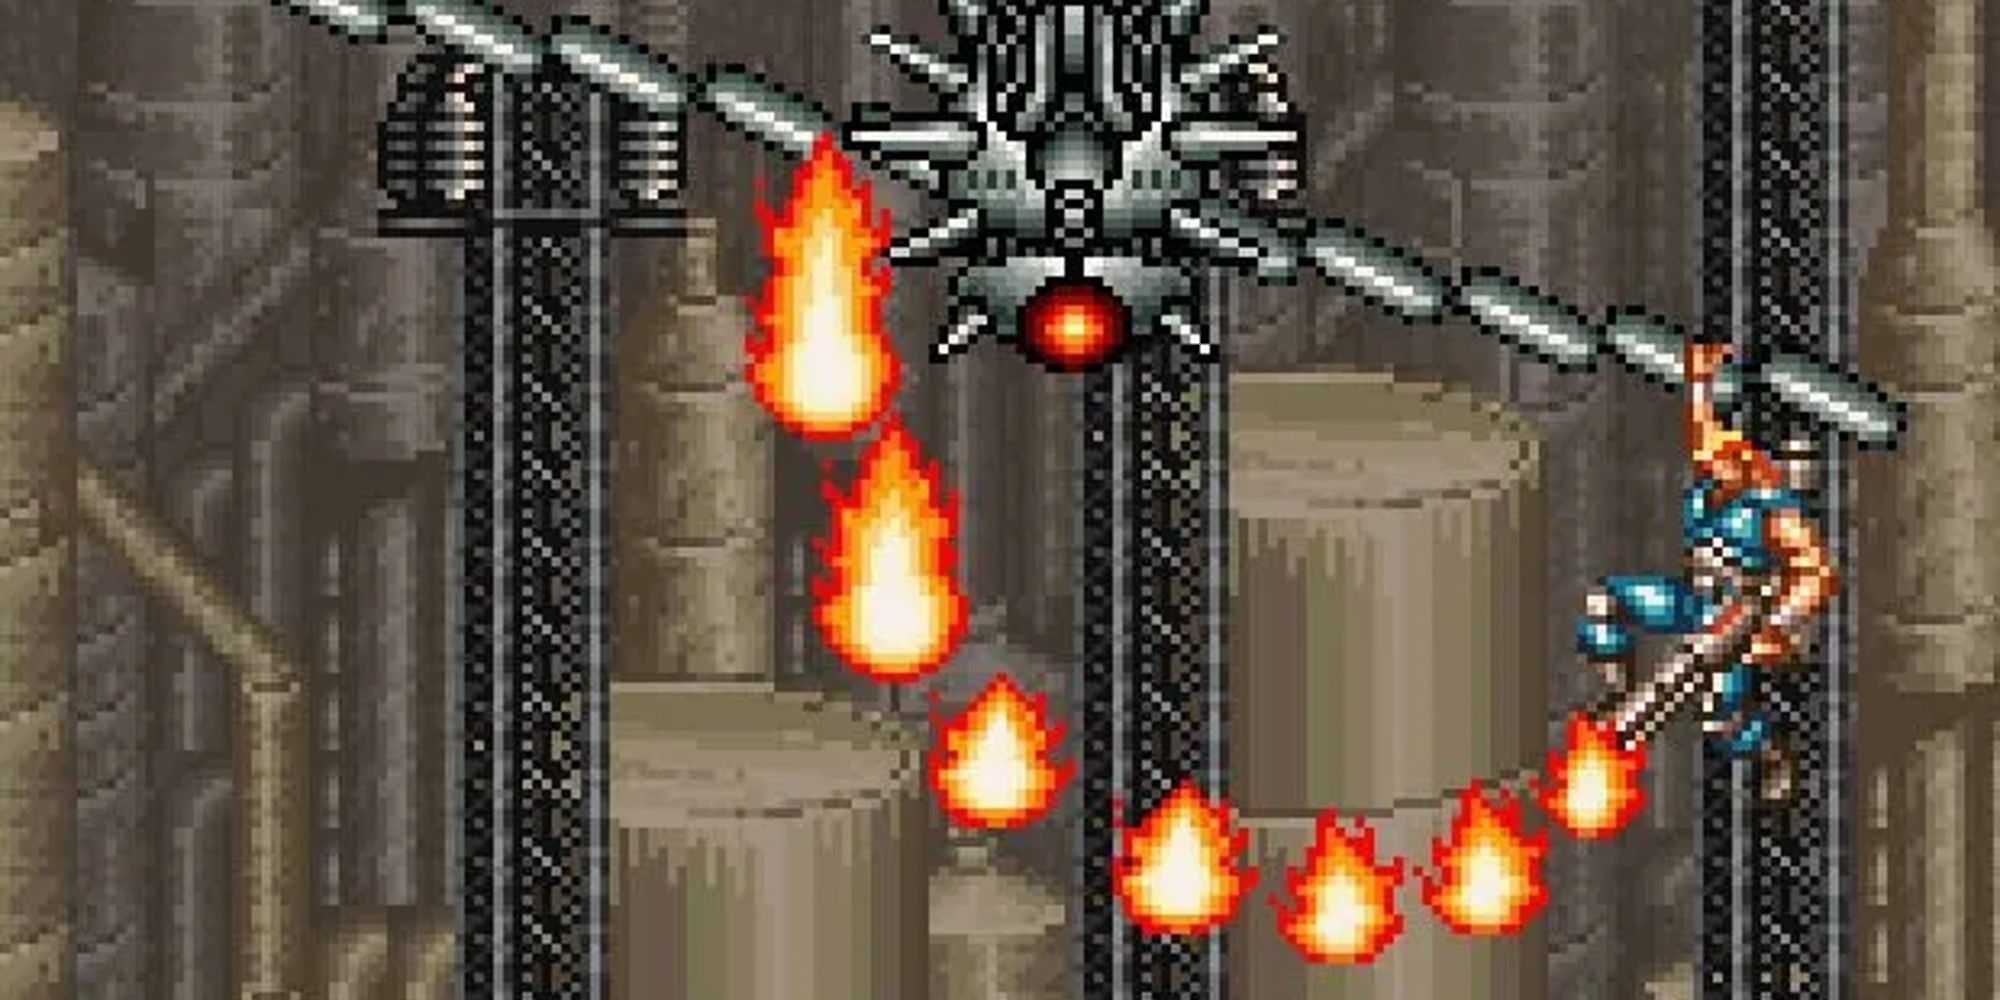 Contra 3 - Flamethrower bending fire